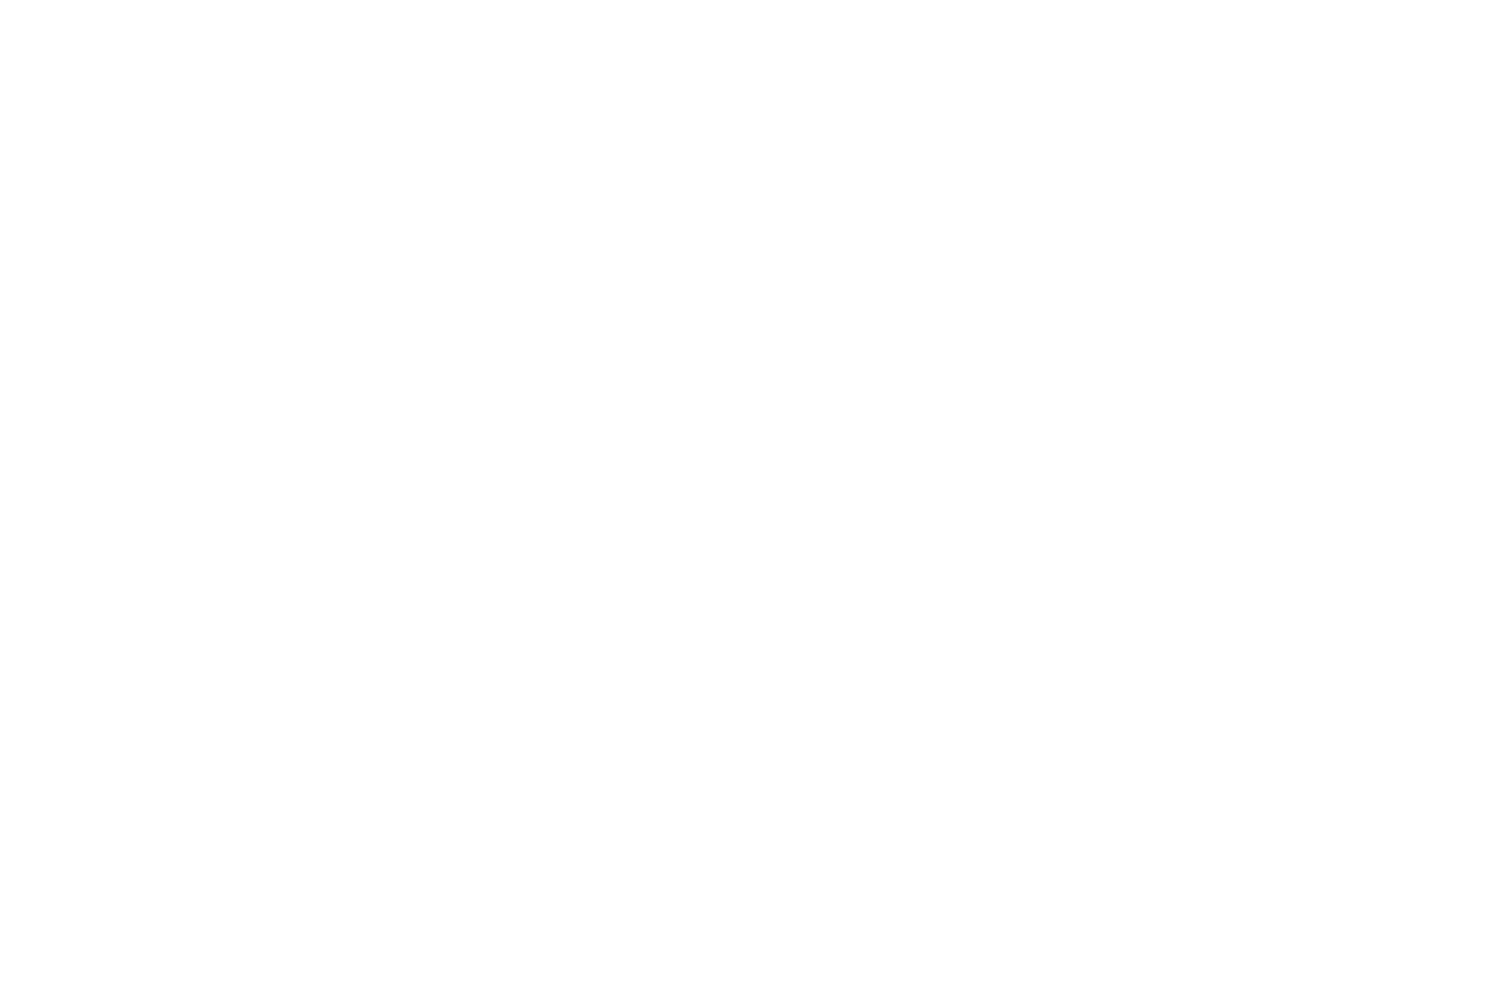 David Walls Photography